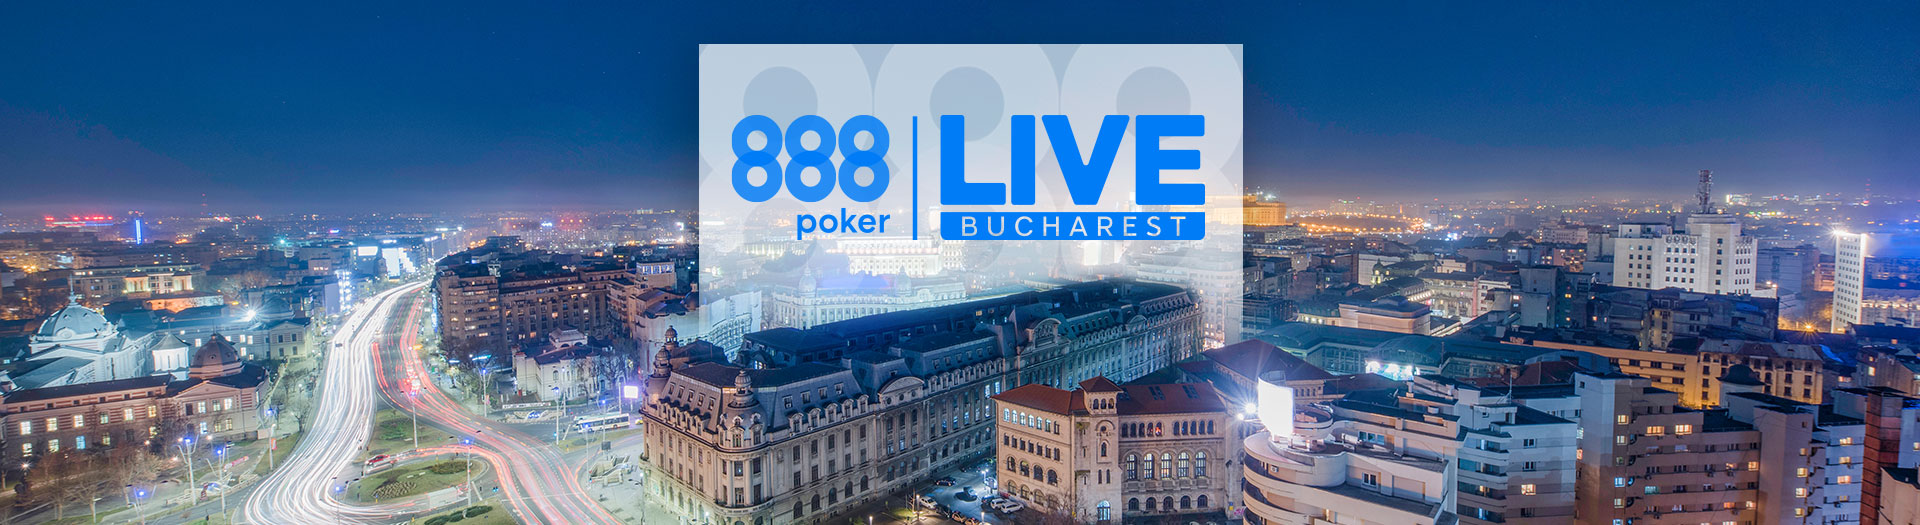 Live-Bucharest-LP-image-1686561106289_tcm1993-590031